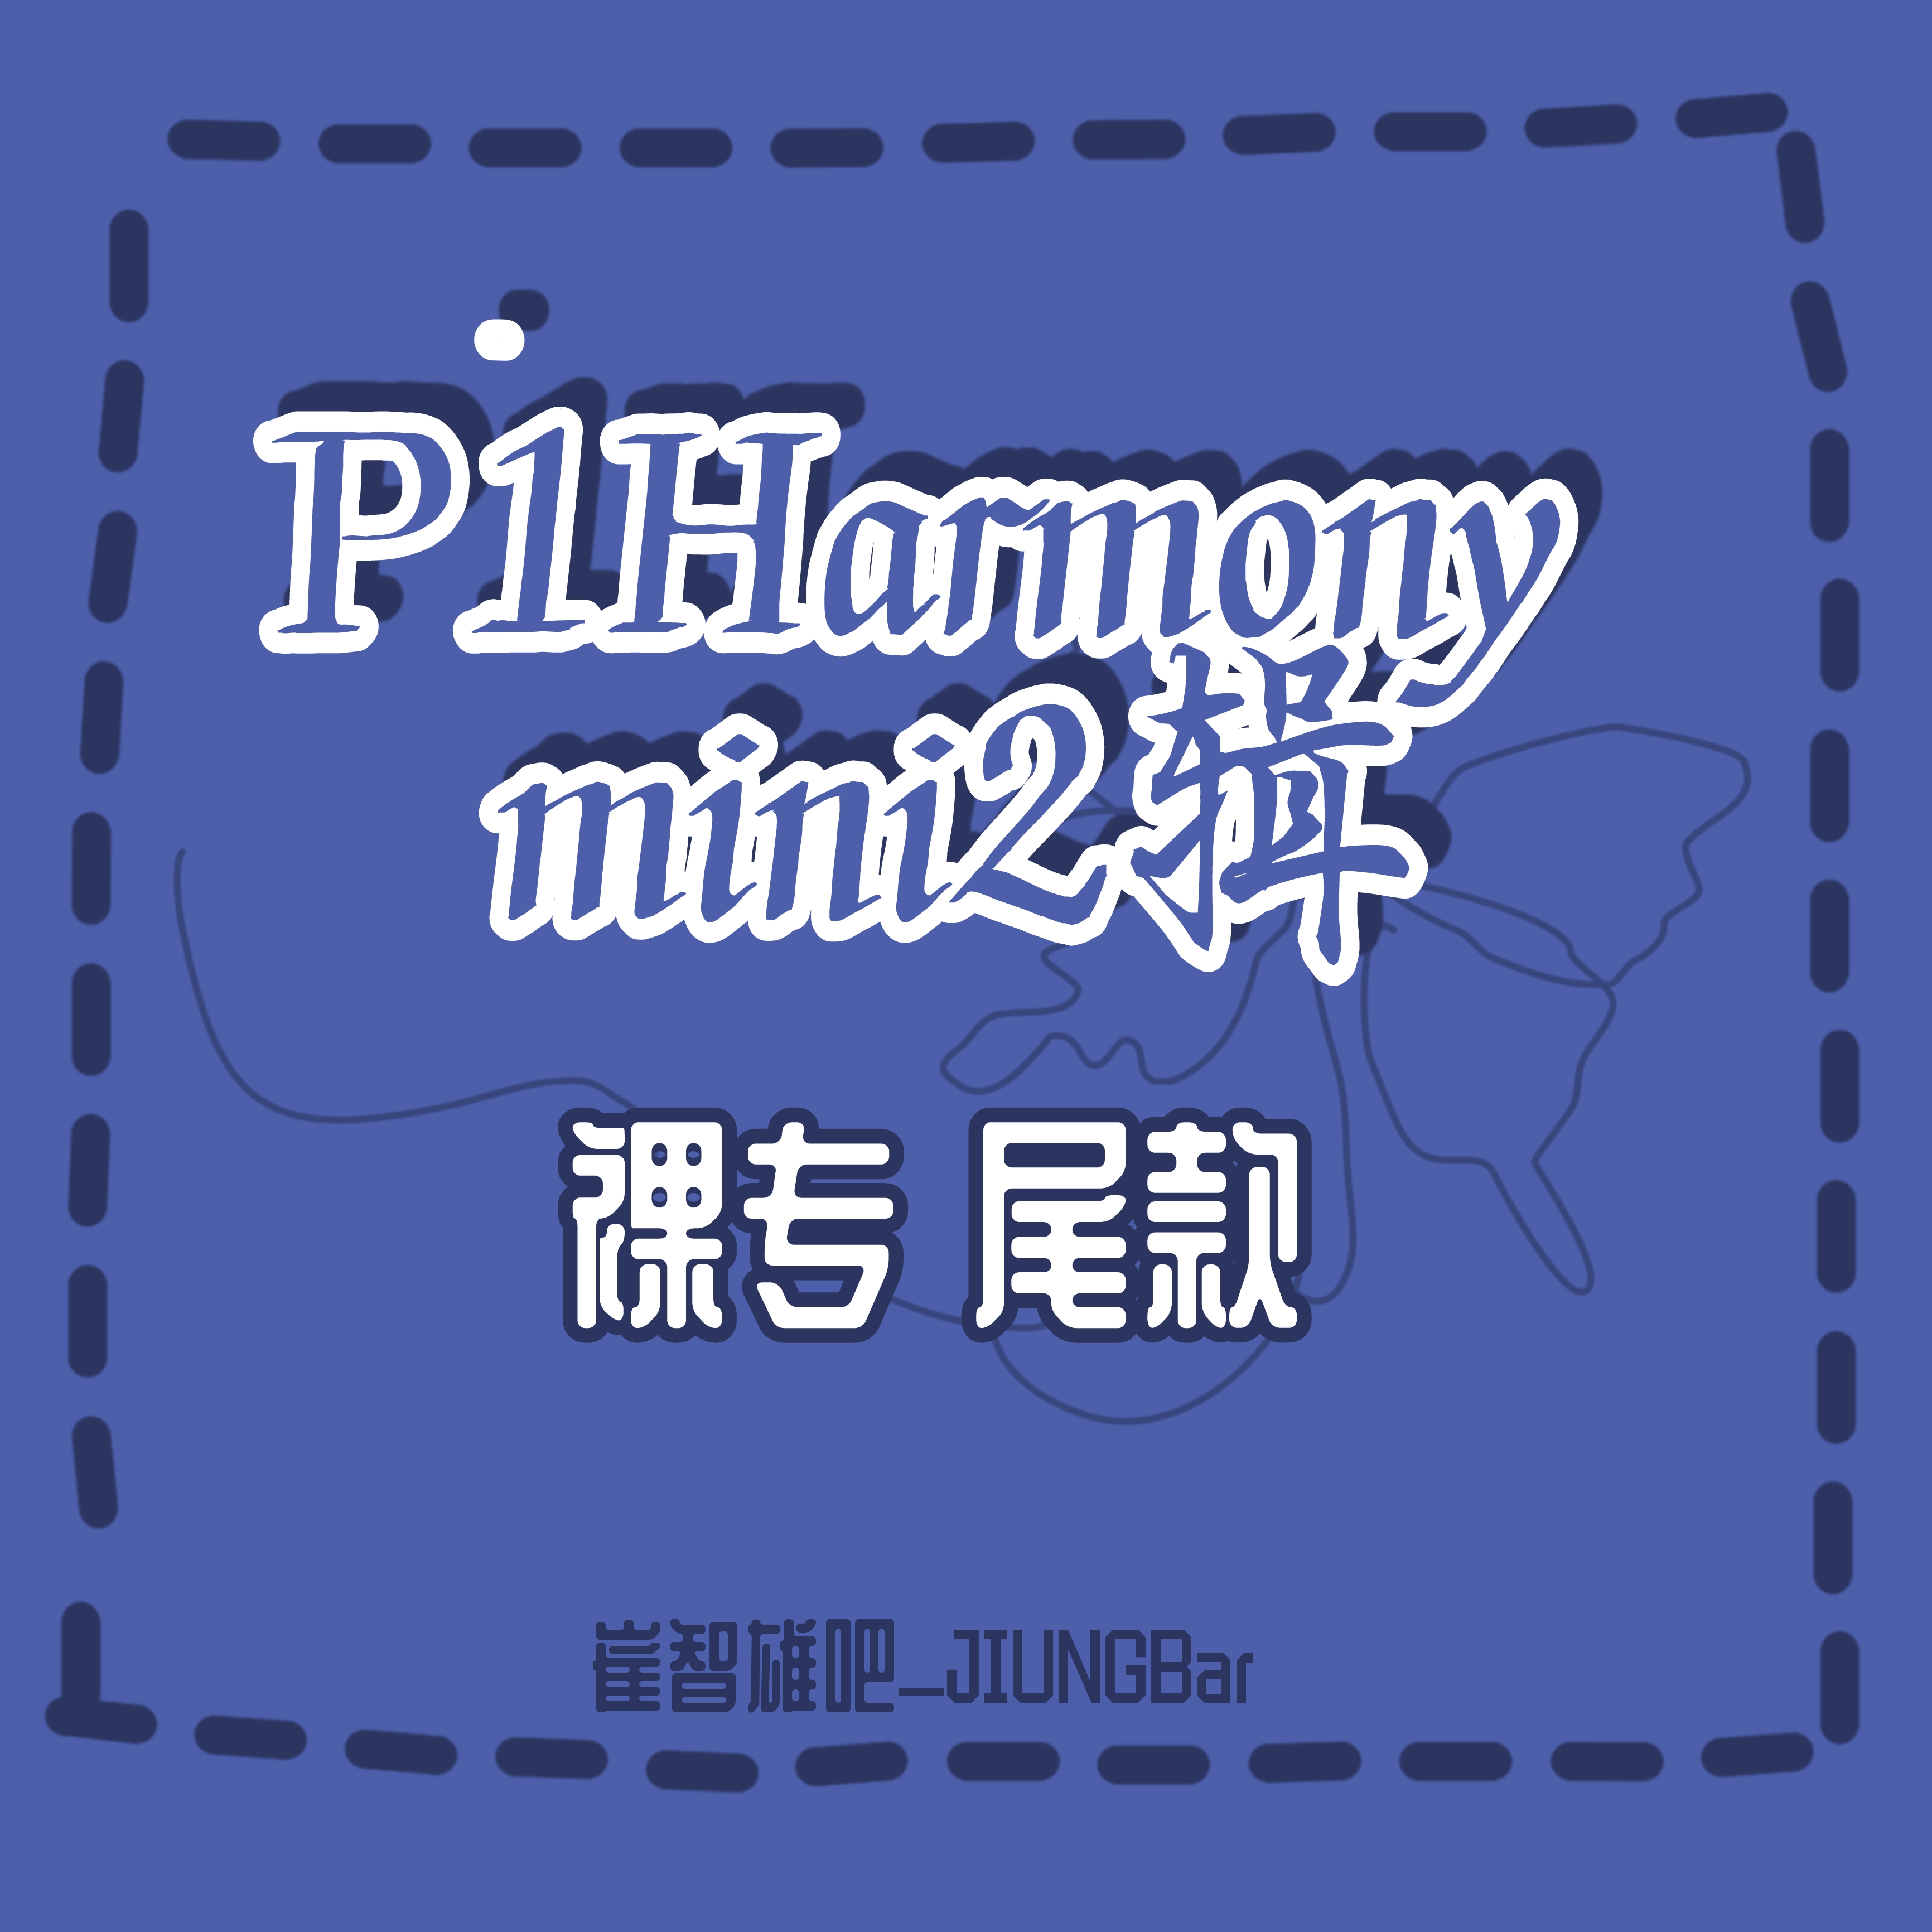 [补款 裸专] P1Harmony - Mini Album Vol.2 [DISHARMONY : BREAK OUT] _崔智雄吧_JIUNGBar